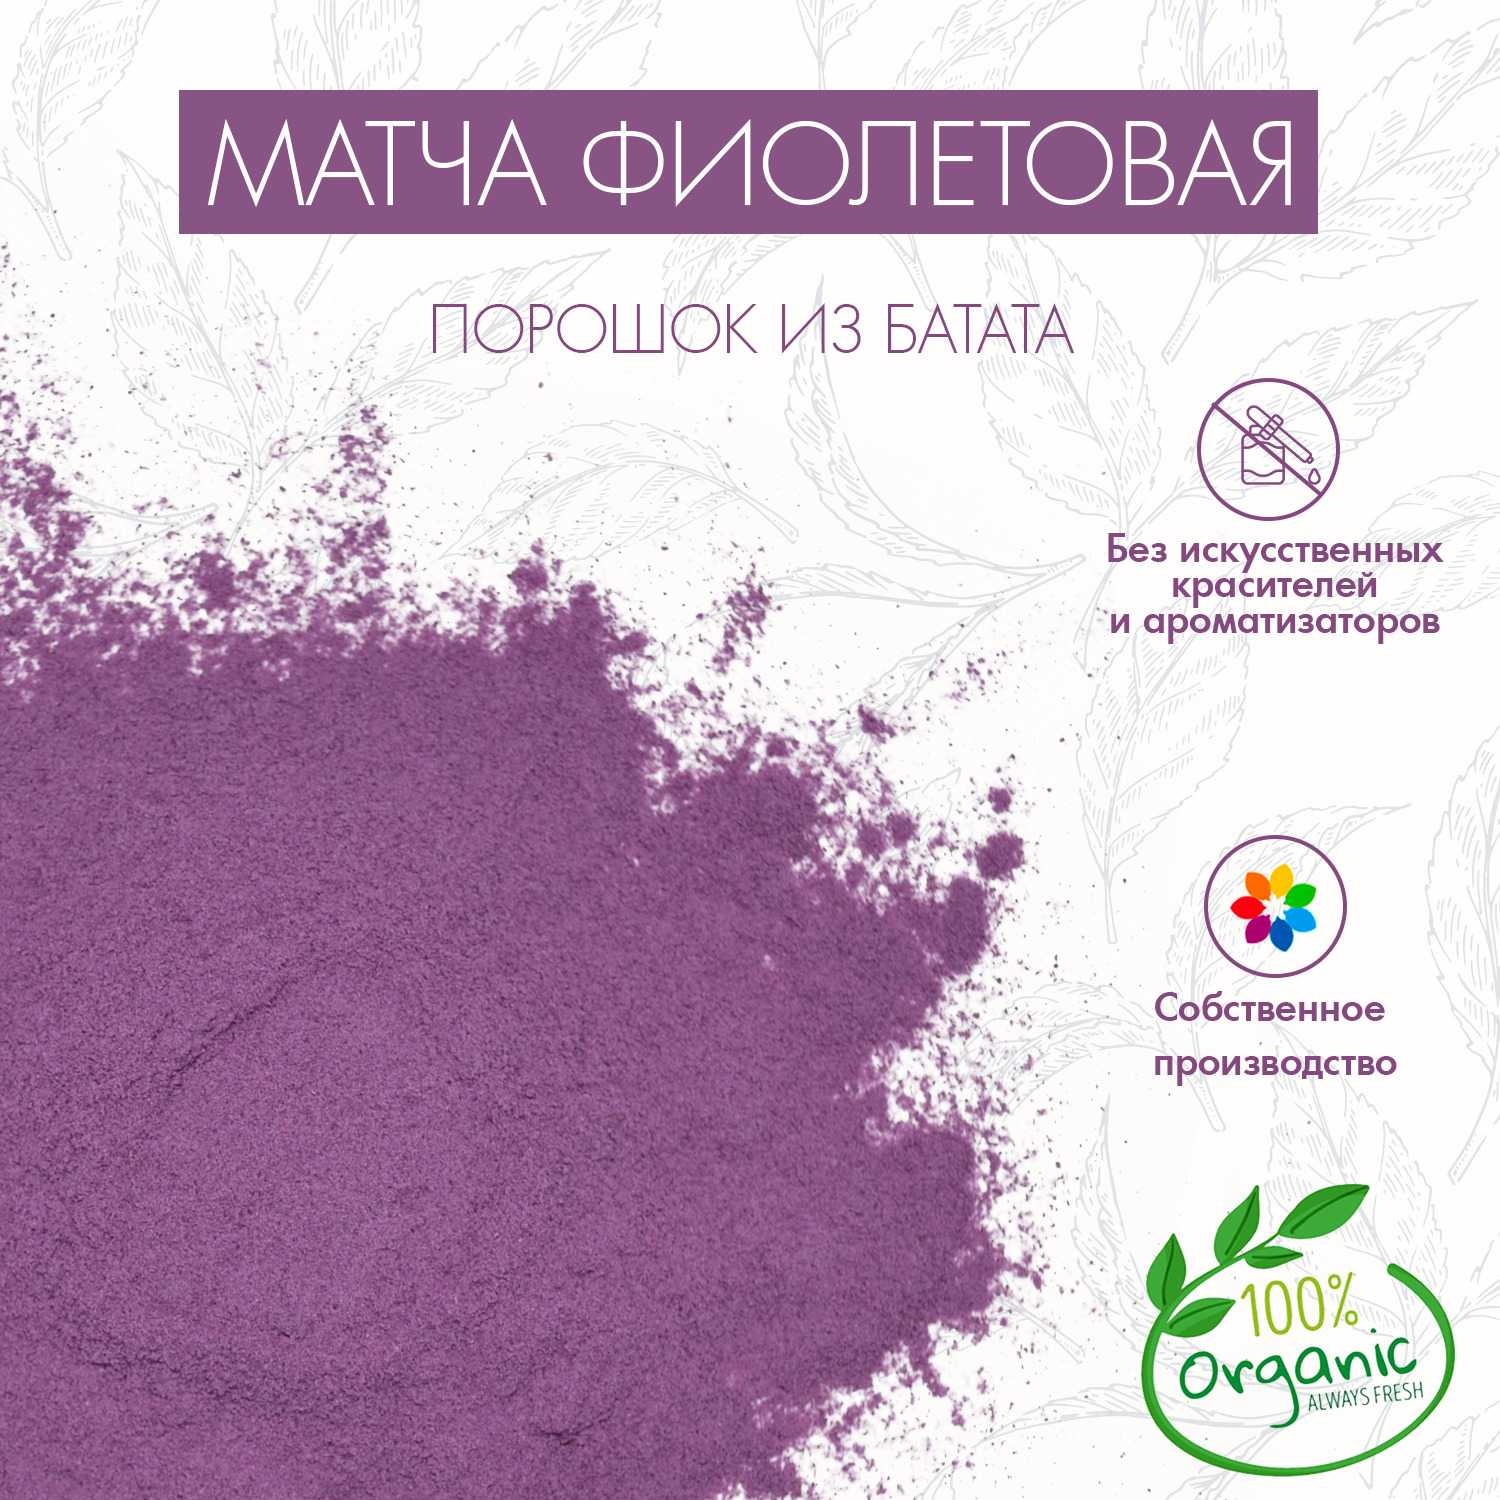 МатчафиолетоваяизбататаSuperlife50г(PurpleМatchaTea,Маття),натуральныйпищевойкрасительдлякулинарныхизделий,выпечки,десертов,кремов